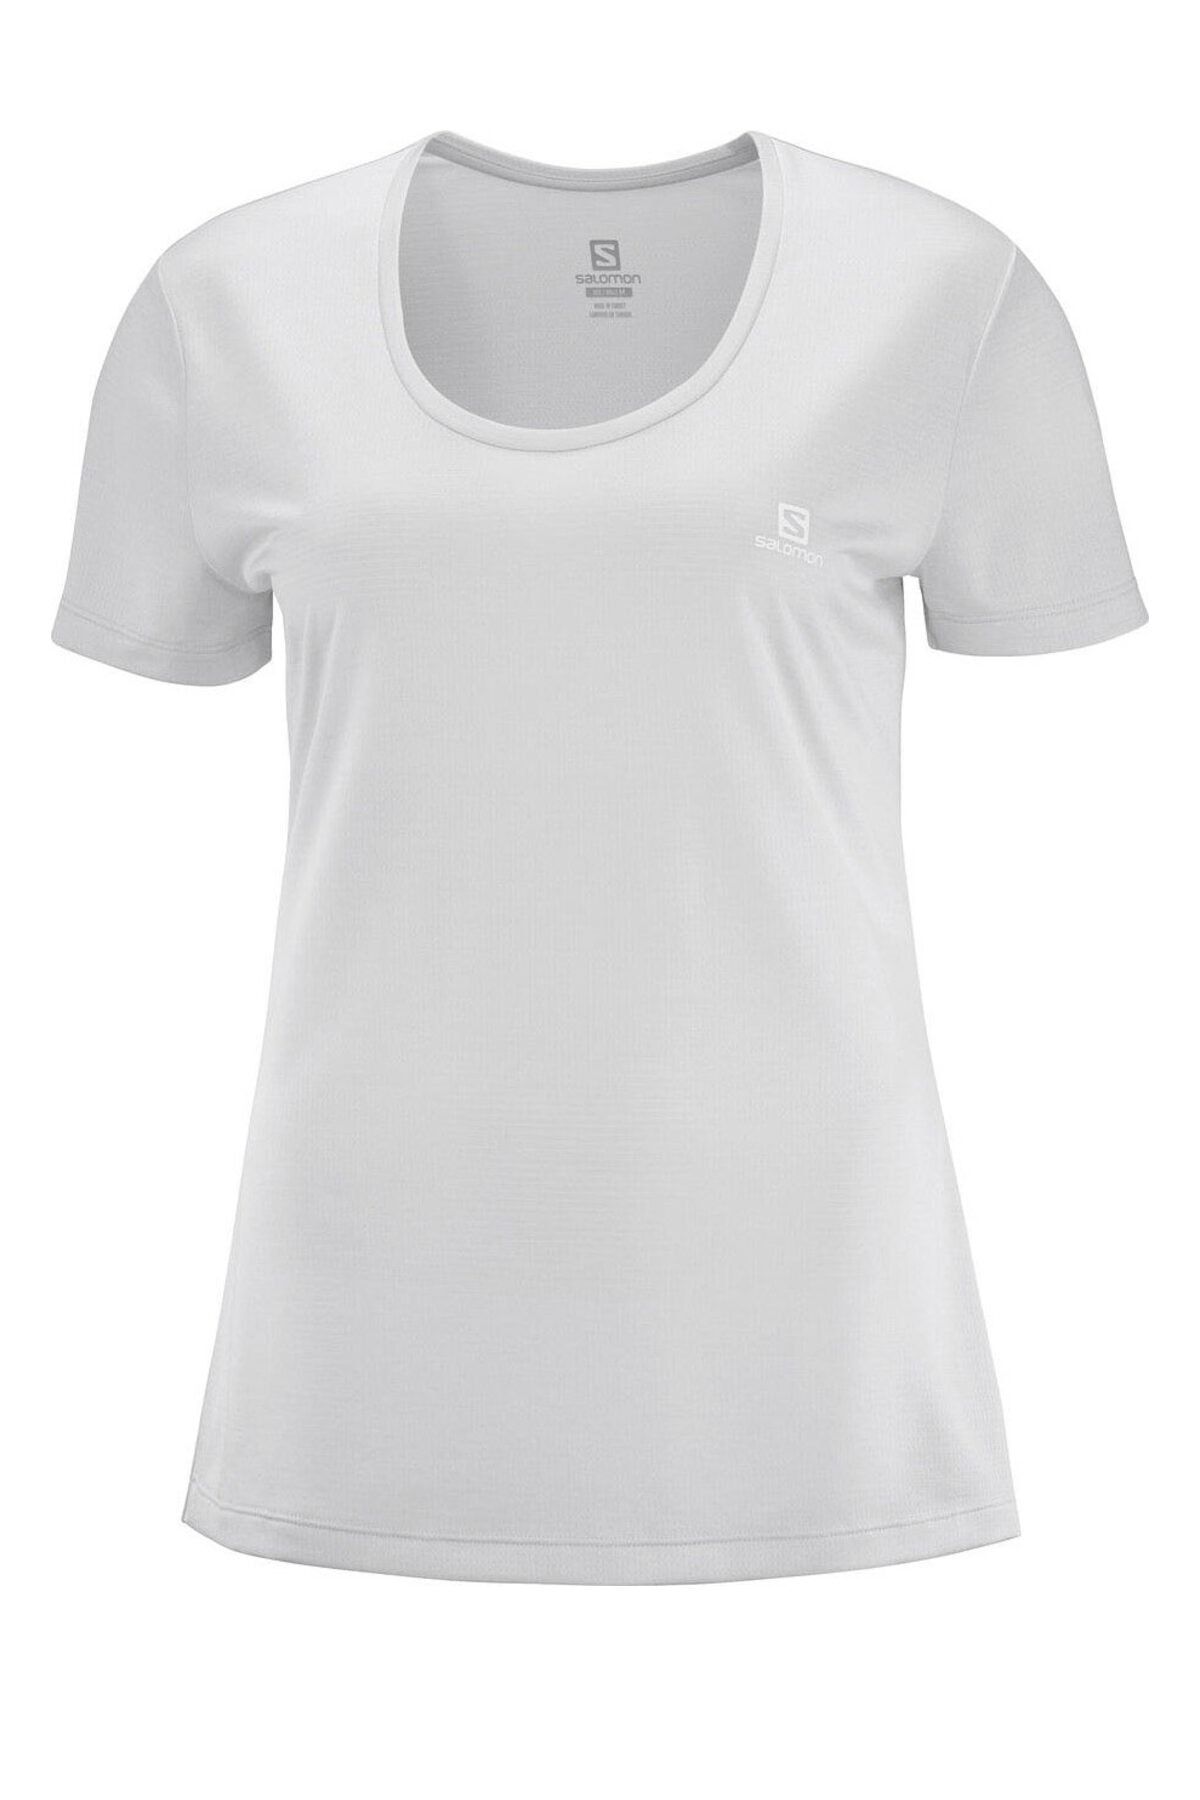 Salomon Kadın T-Shirt Agile 437419